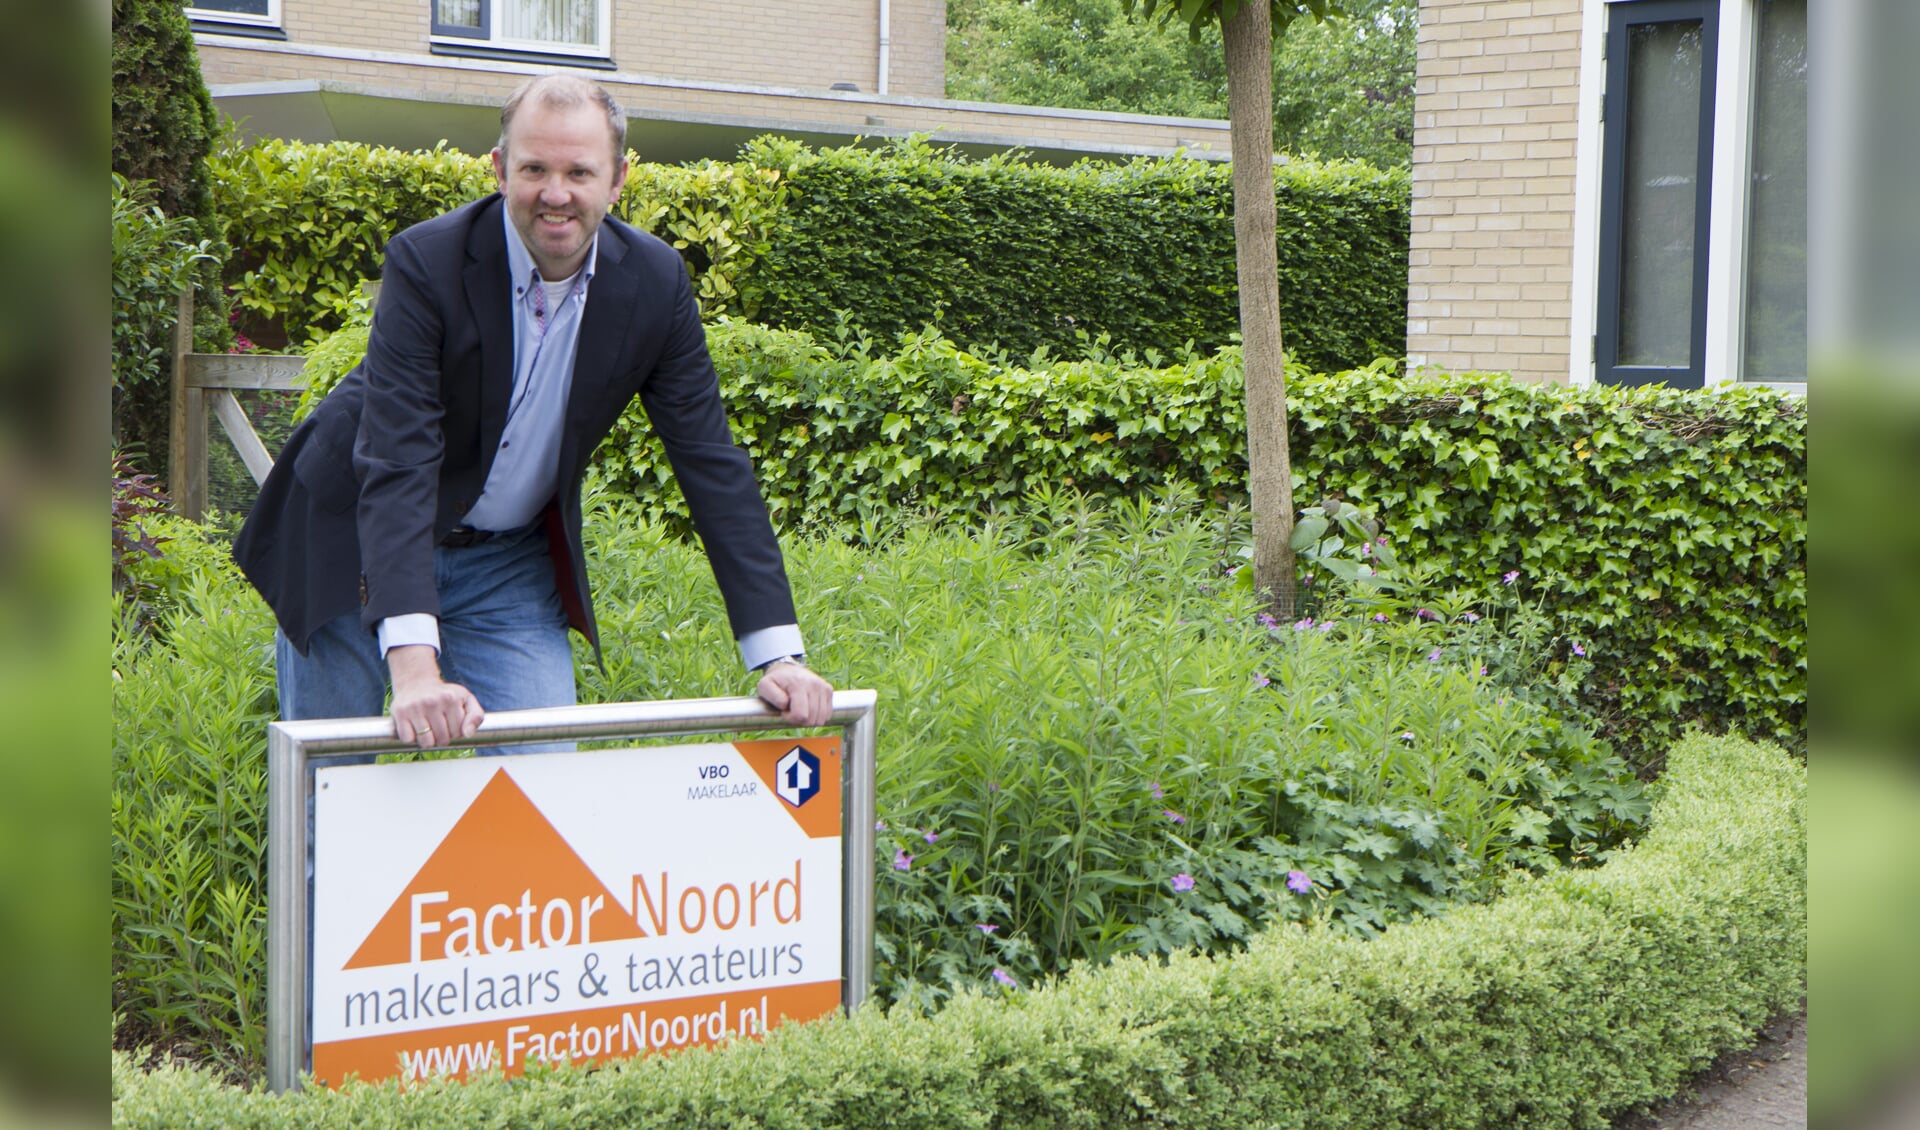 Otto Minnema van Factornoord Makelaars & Taxateurs in Hurdegaryp waarschuwt bij de aan- en verkoop van huizen te letten op de kosten van asbestdaken.